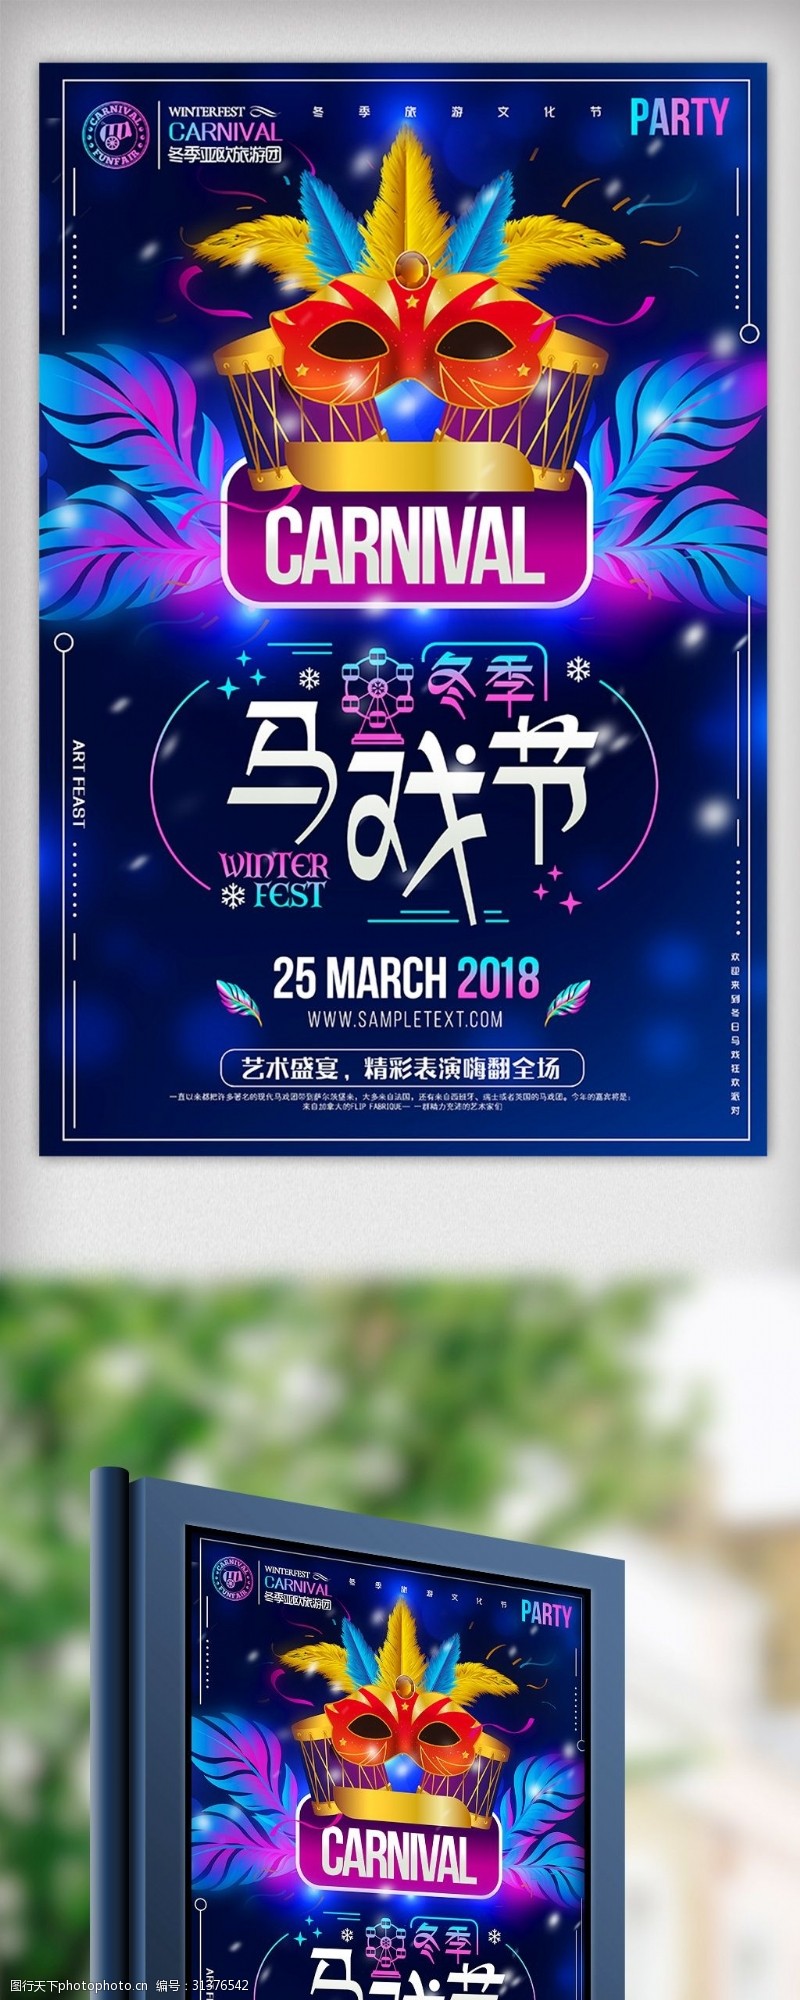 宝马模板下载炫彩冬季马戏节冬天旅行创意海报